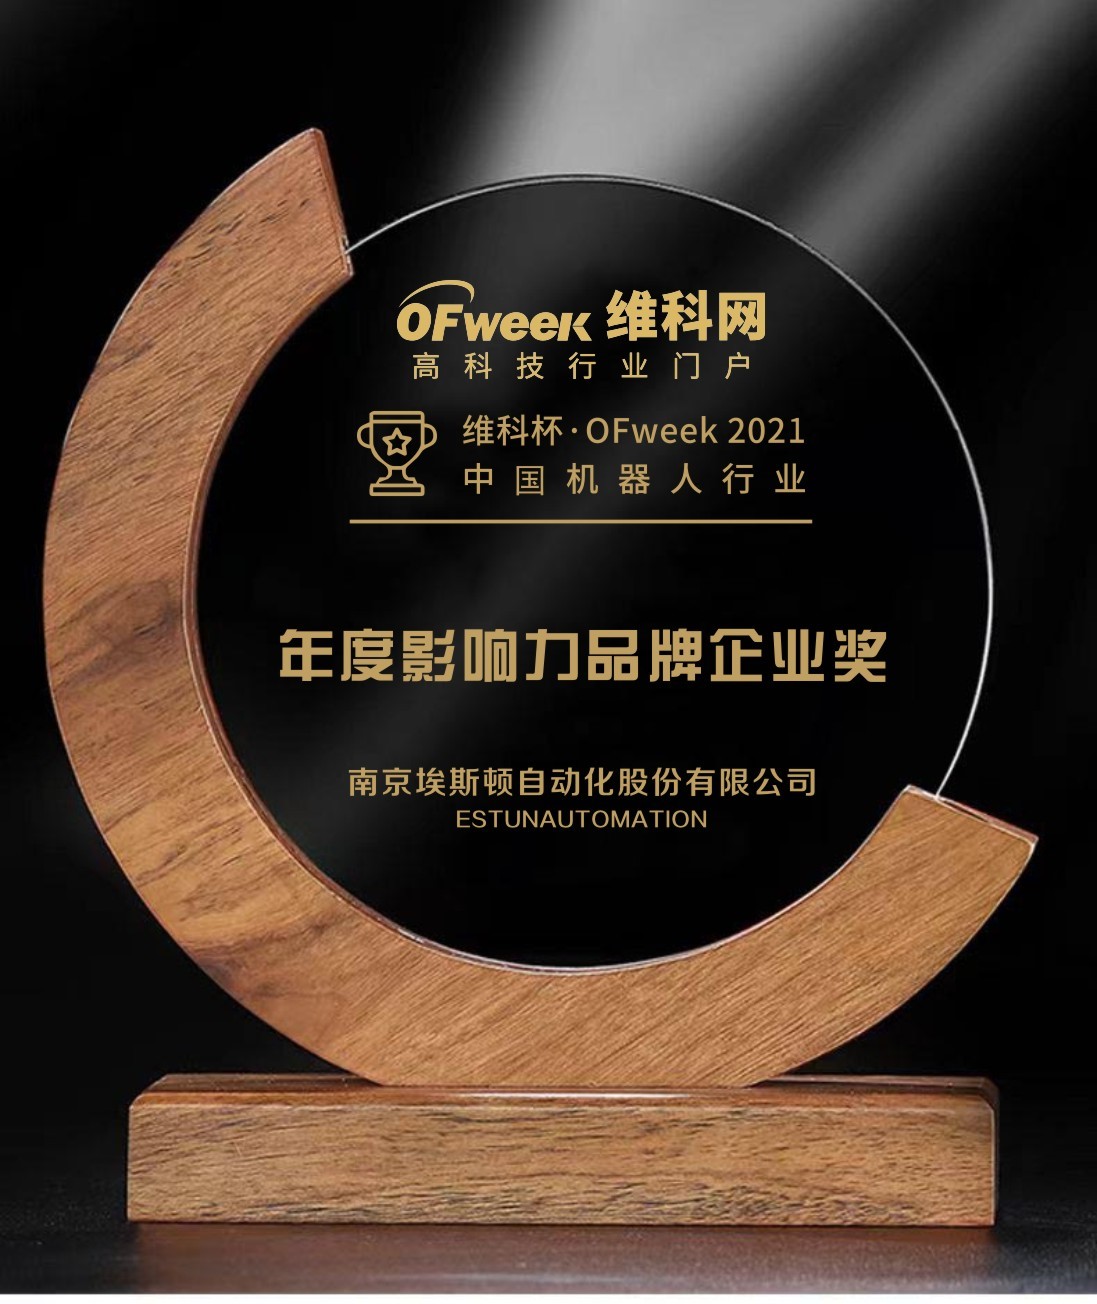 南京埃斯顿荣获“维科杯·OFweek 2021中国机器人行业年度影响力品牌企业奖”